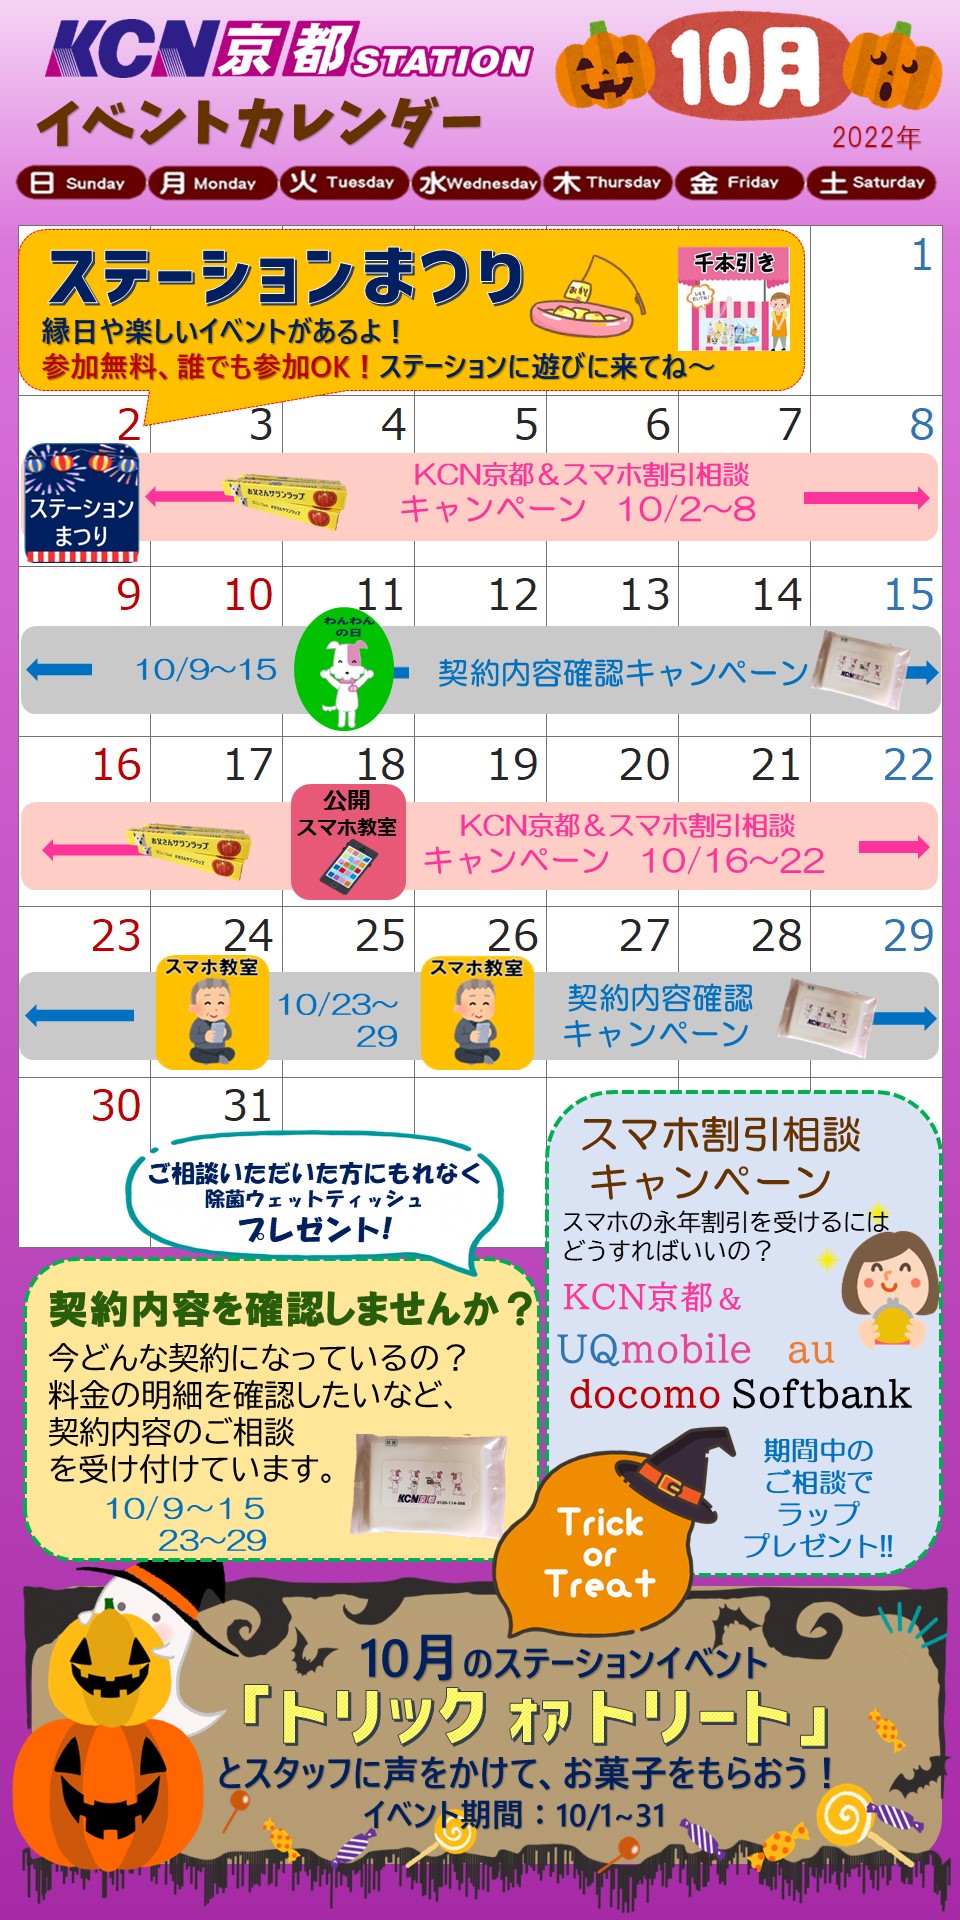 KCN京都ステーションカレンダーのお知らせ